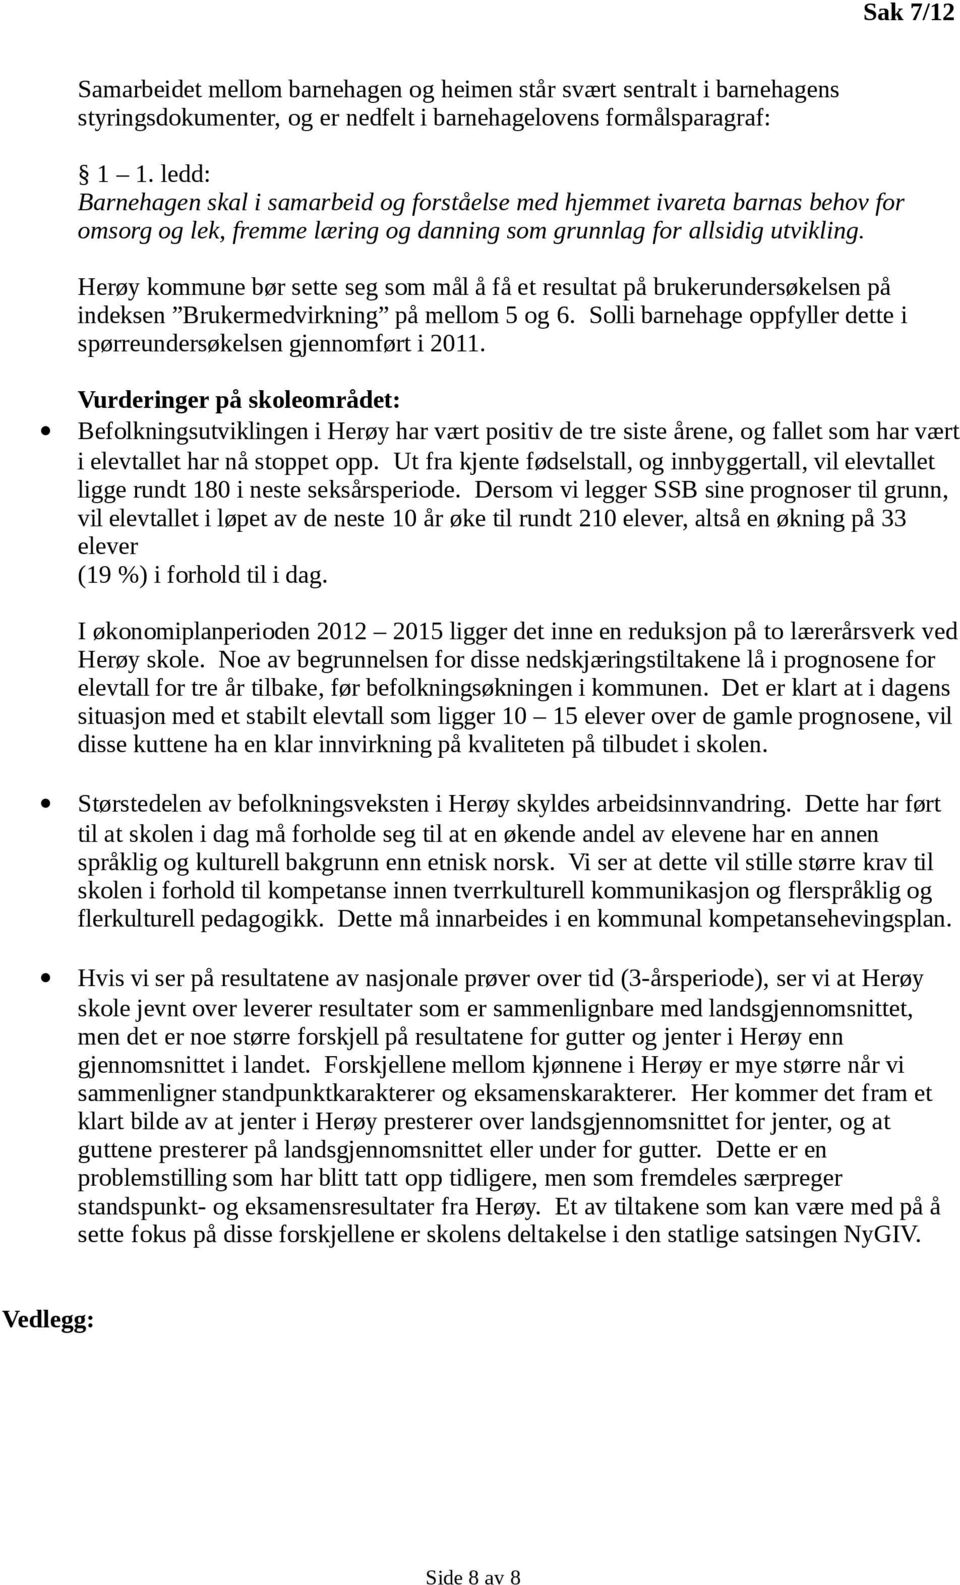 Herøy kommune bør sette seg som mål å få et resultat på brukerundersøkelsen på indeksen Brukermedvirkning på mellom 5 og 6. Solli barnehage oppfyller dette i spørreundersøkelsen gjennomført i 2011.